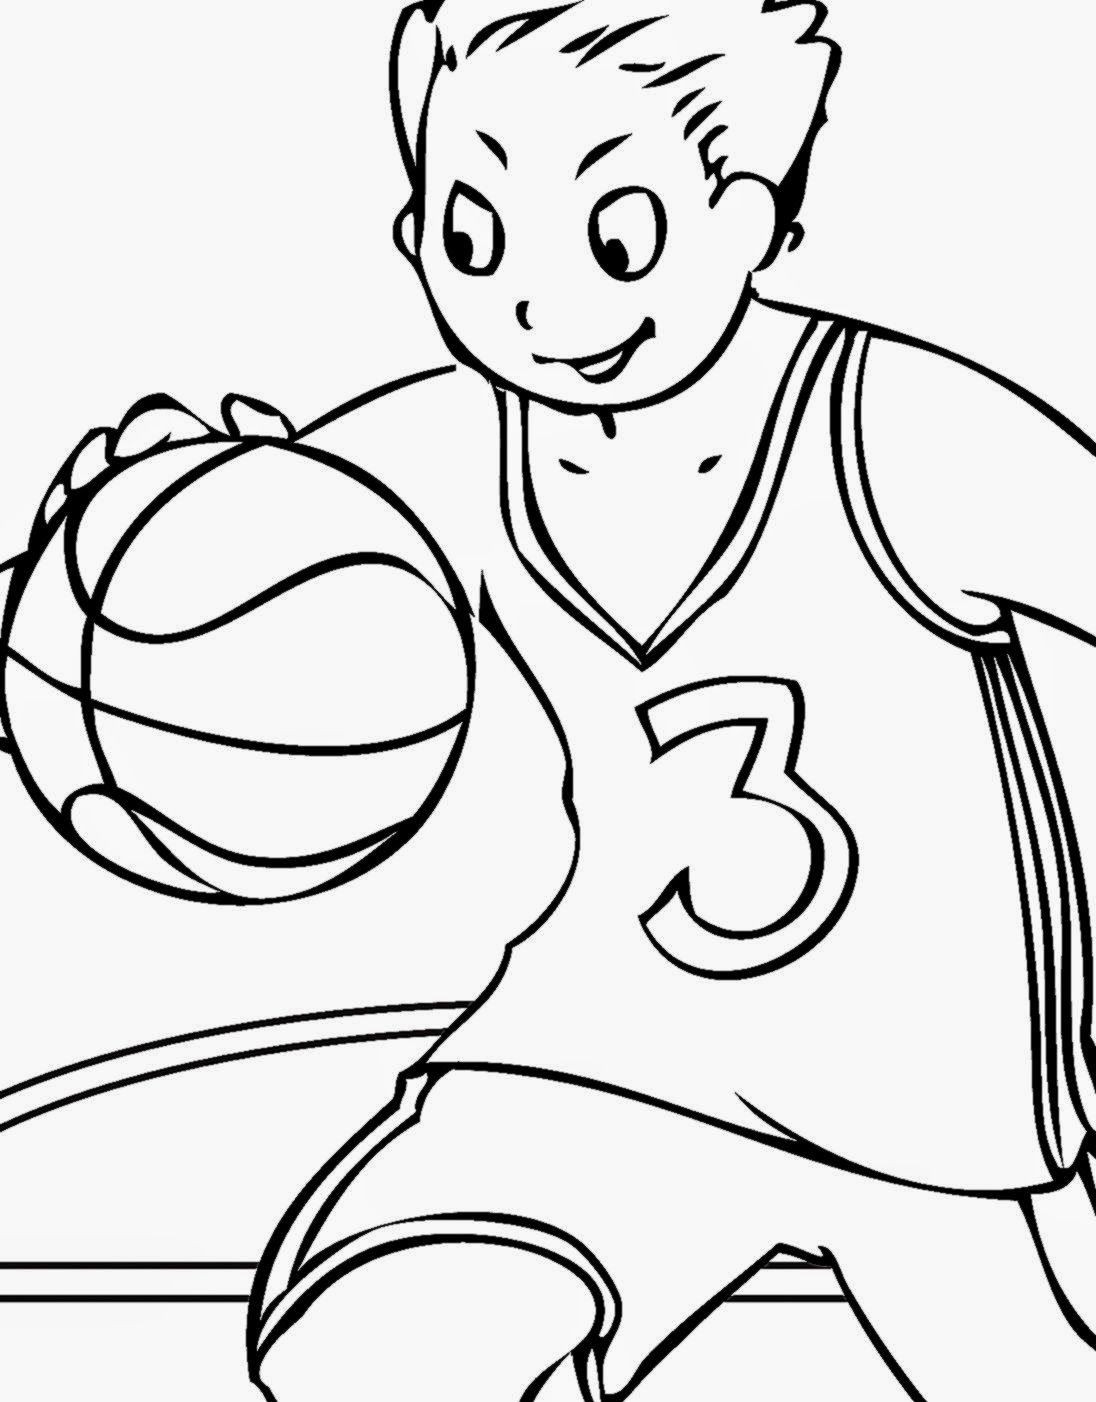 Basketball Coloring Pages Printable
 Basketball Coloring Pages Printable Coloring Home